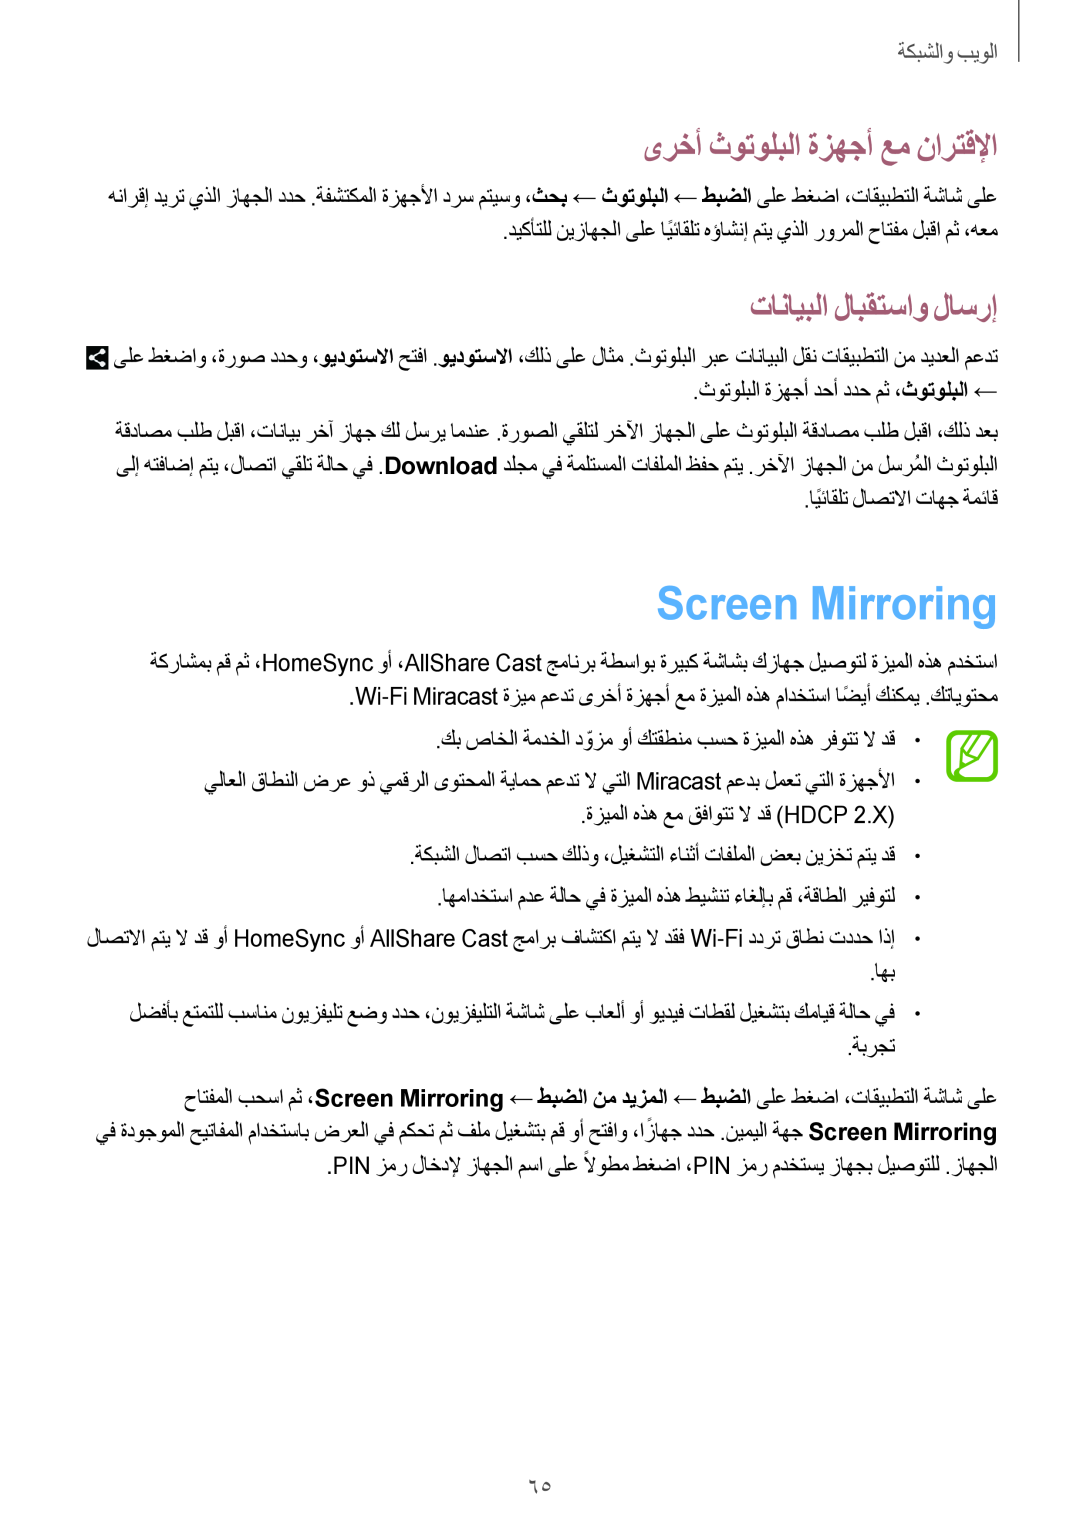 Samsung GT-N8000ZWAEGY manual Screen Mirroring, ىرخأ ثوتولبلا ةزهجأ عم نارتقلإا, تانايبلا لابقتساو لاسرإ, الويٜوالشٜ䌆 